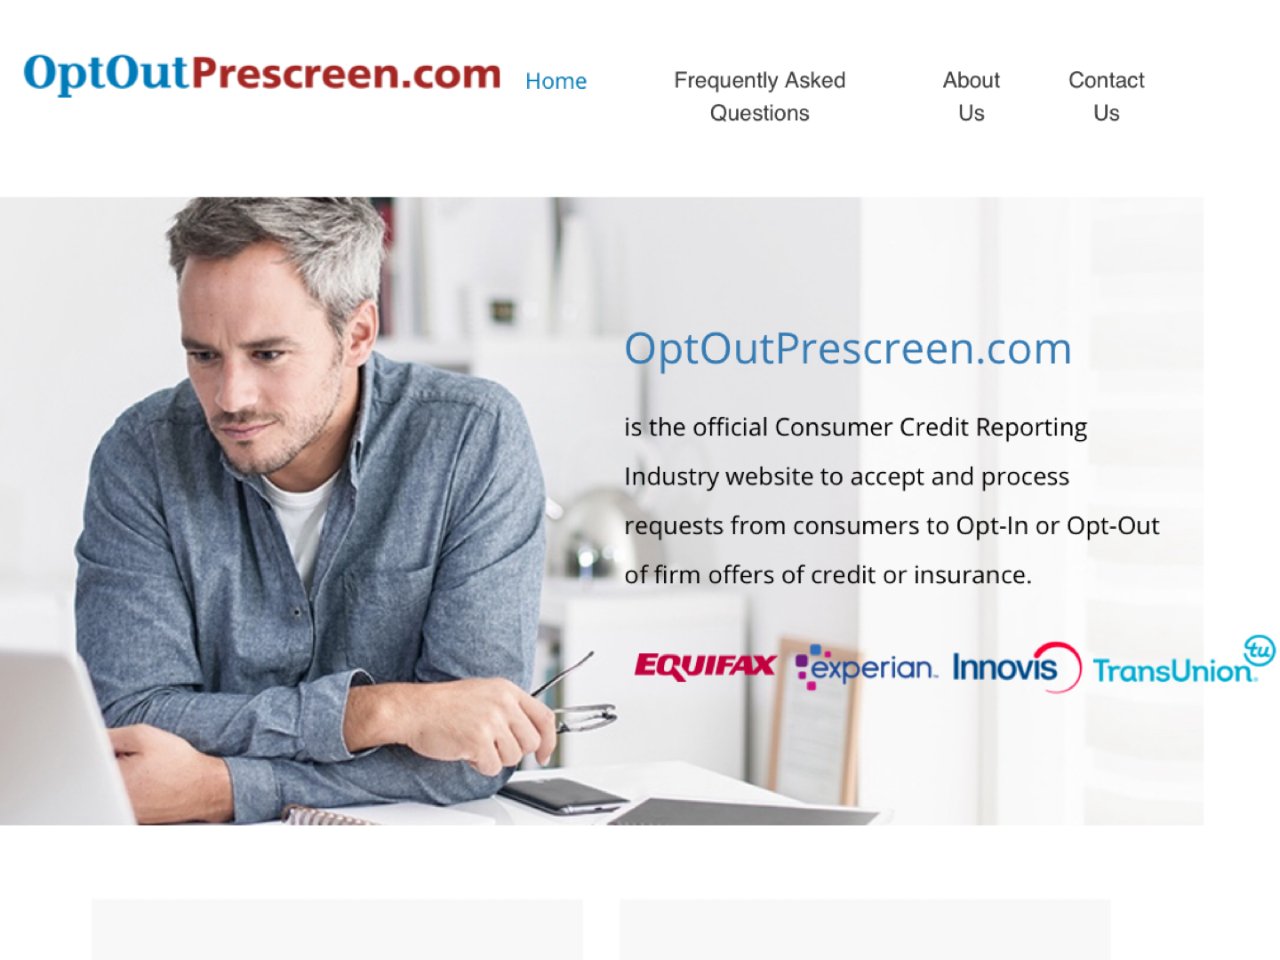 OptOutPrescreen.com